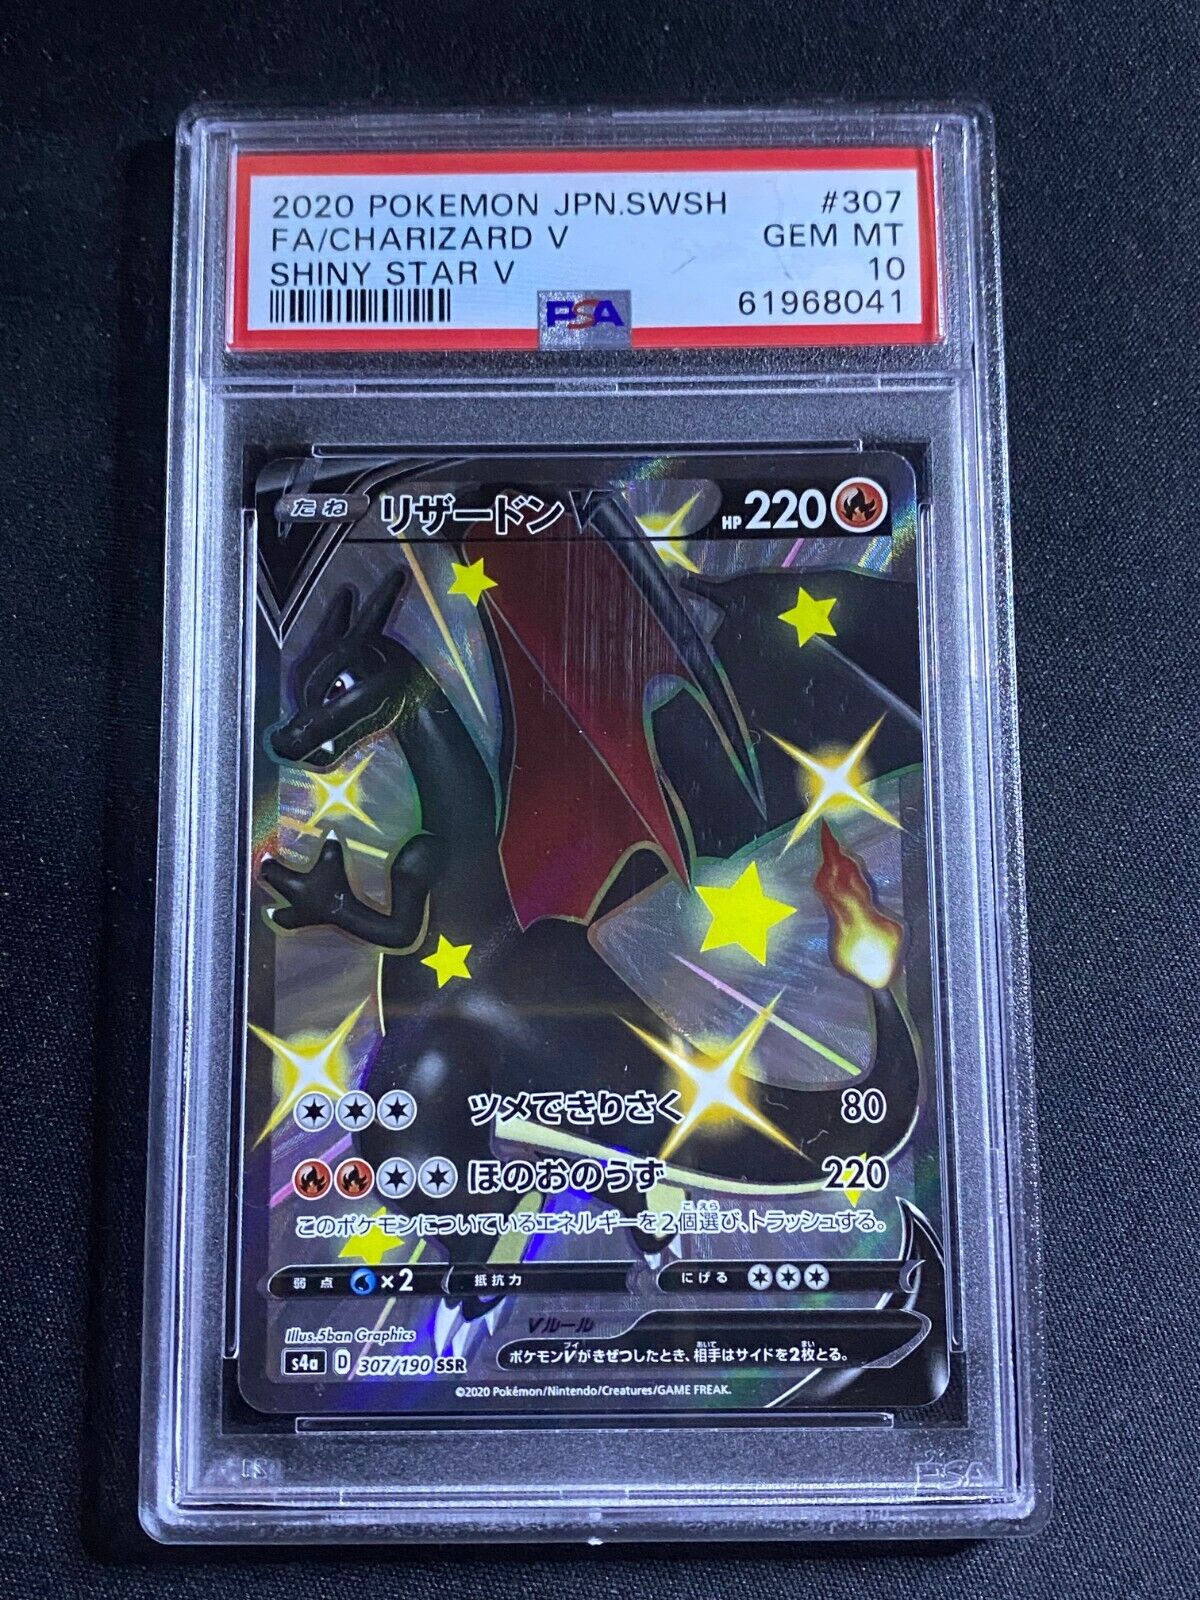 PSA 10 GEM MINT Pokemon Card Japanese 307190 CHARIZARD V SSR Shiny Star V